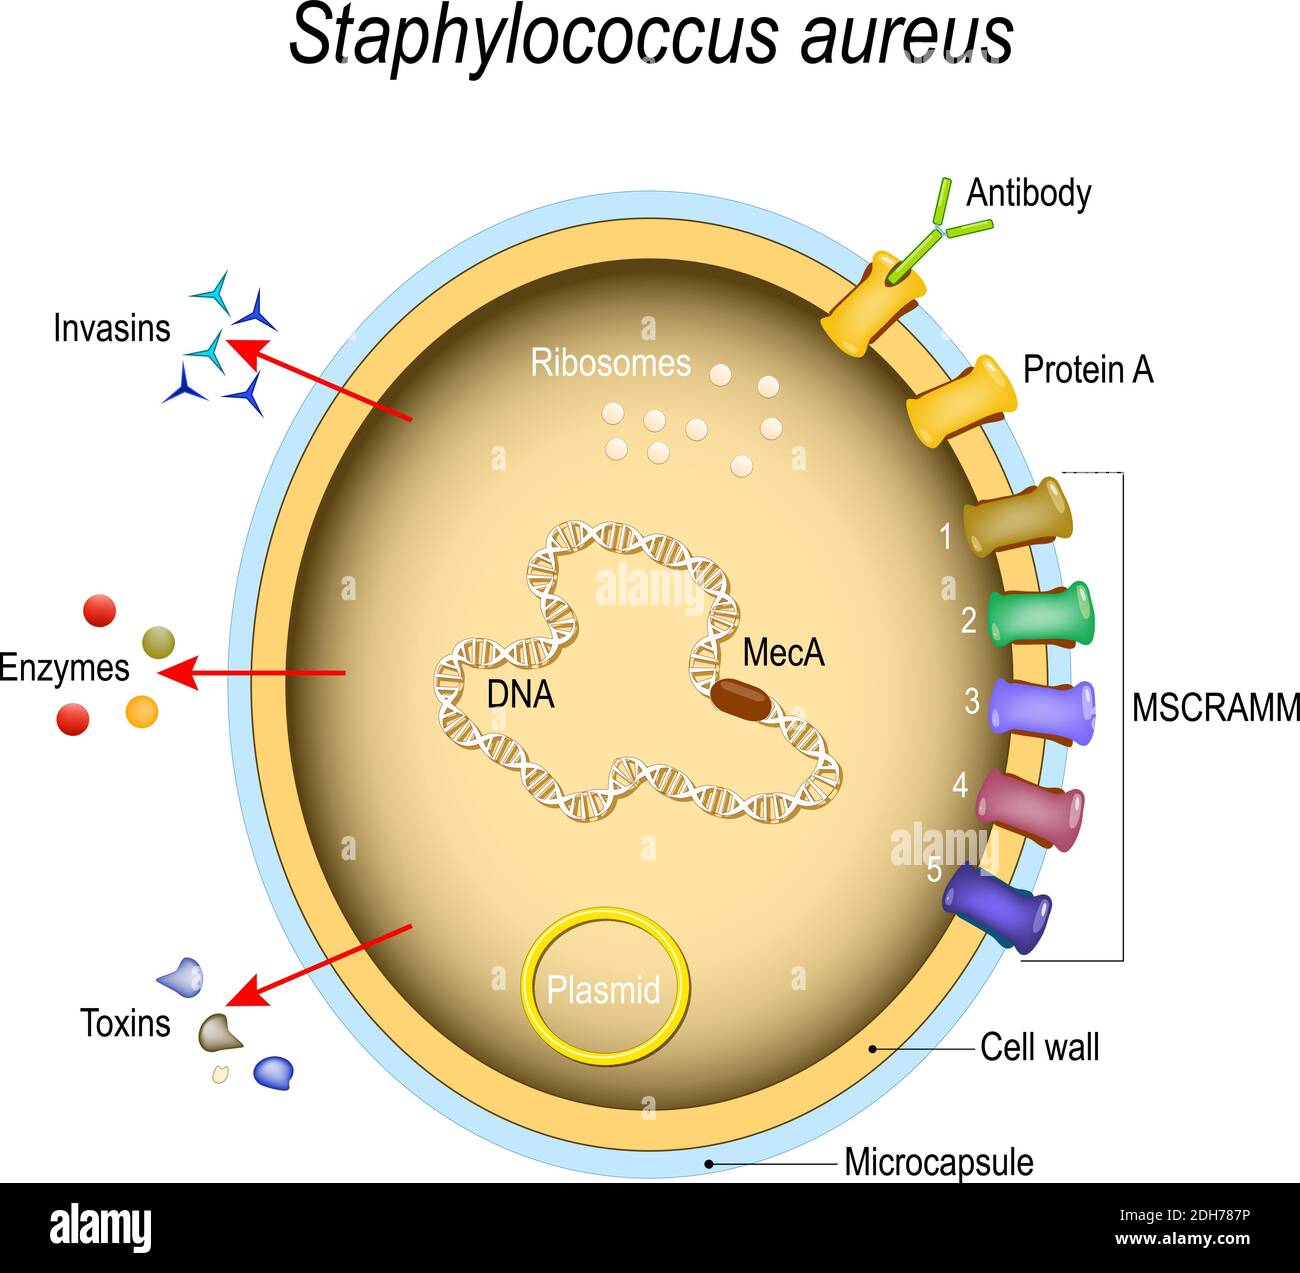 Staphylococcus aureus estructura celular y factores patógenos. Componentes de células. Ilustración vectorial para uso médico, educativo y científico Ilustración del Vector